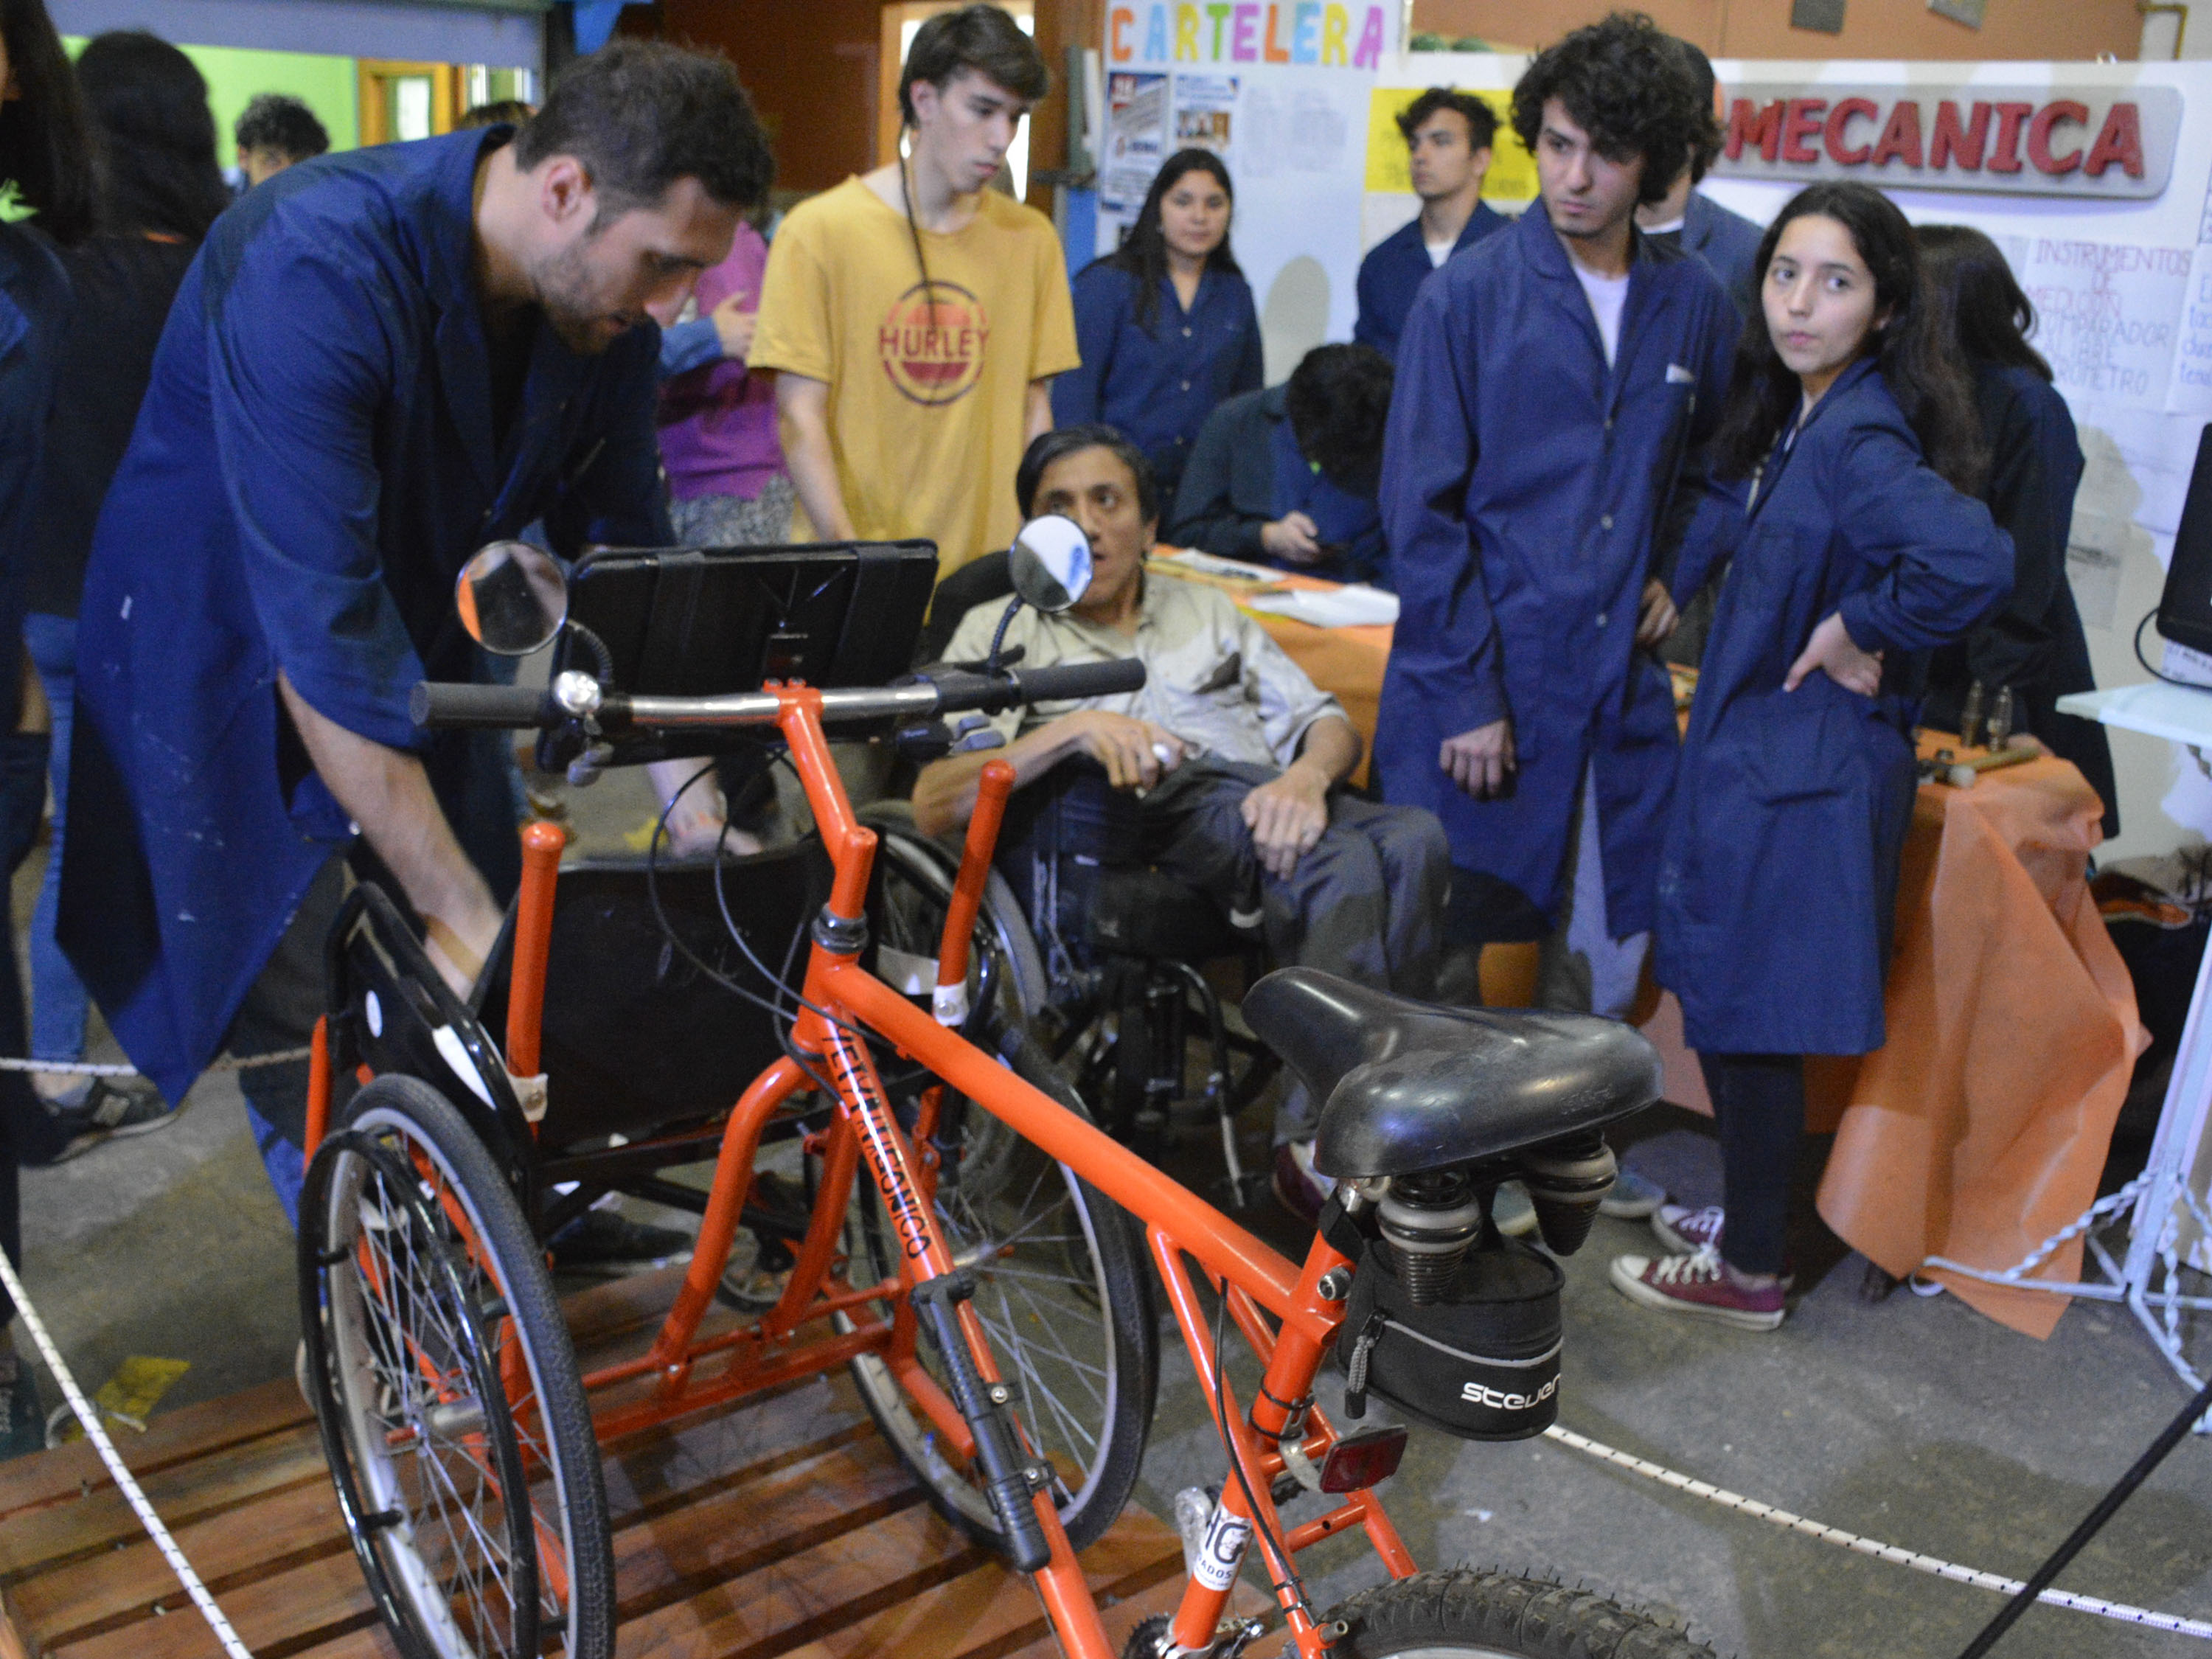 La bicicleta tiene adaptada una silla para las personas con discapacidad motora. (Foto: Patricio Rodríguez)